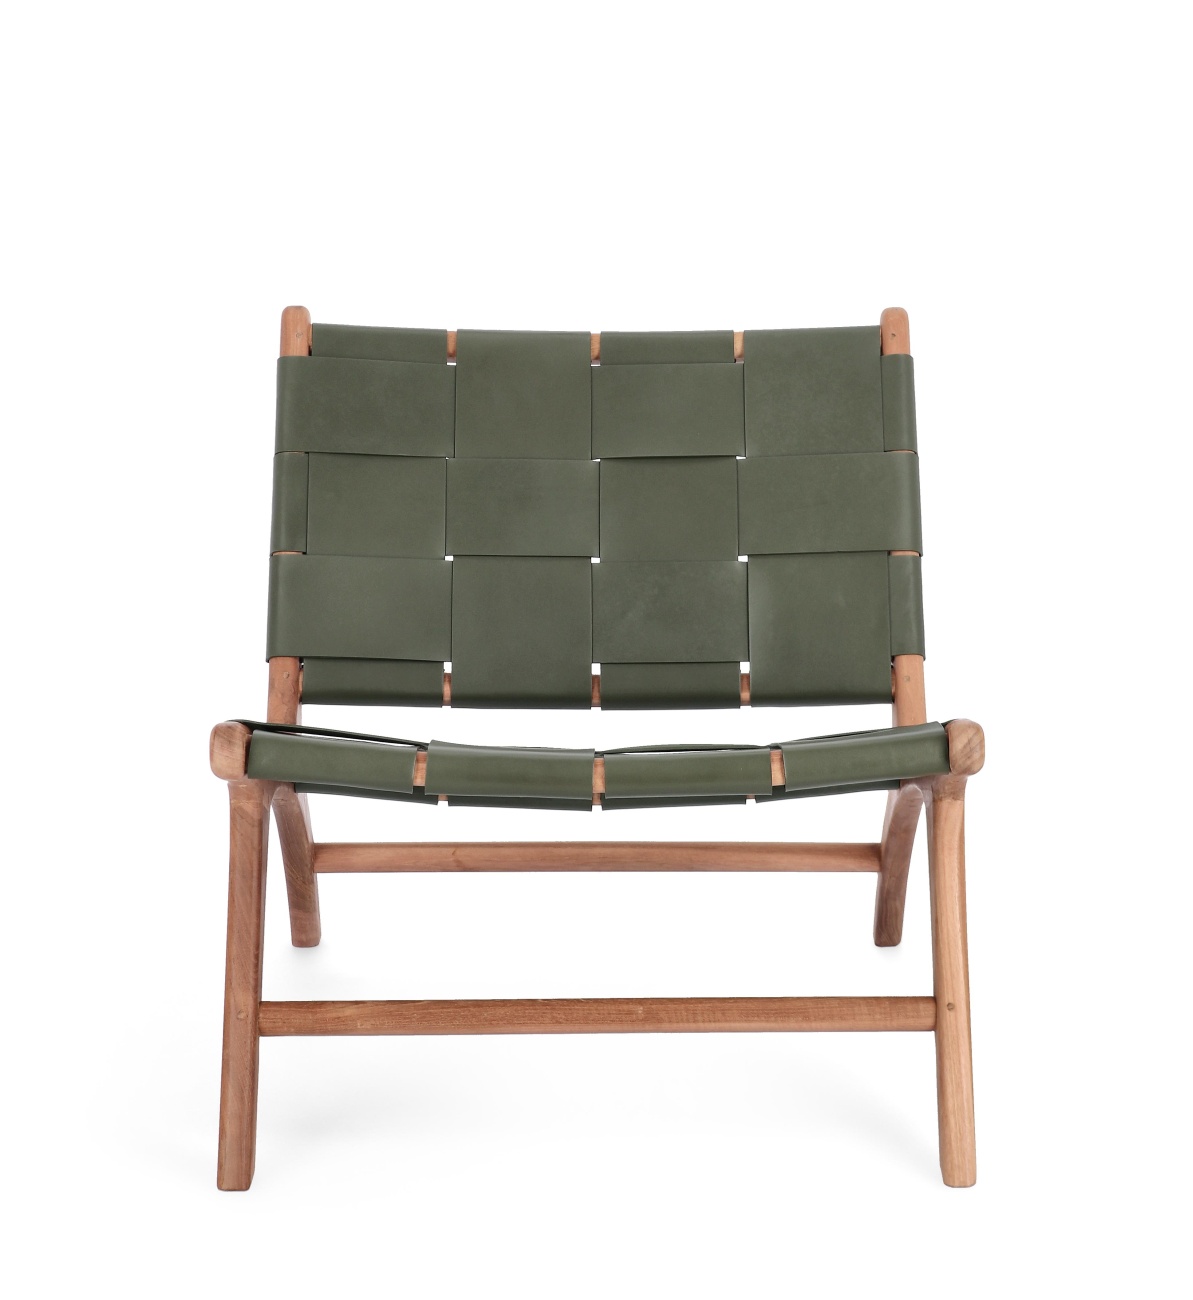 Der Sessel Joanna überzeugt mit seinem modernen Stil. Gefertigt wurde er aus Leder, welches einen grünenFarbton besitzt. Das Gestell ist aus Teakholz und hat eine natürliche Farbe. Der Sessel besitzt eine Sitzhöhe von 39 cm.